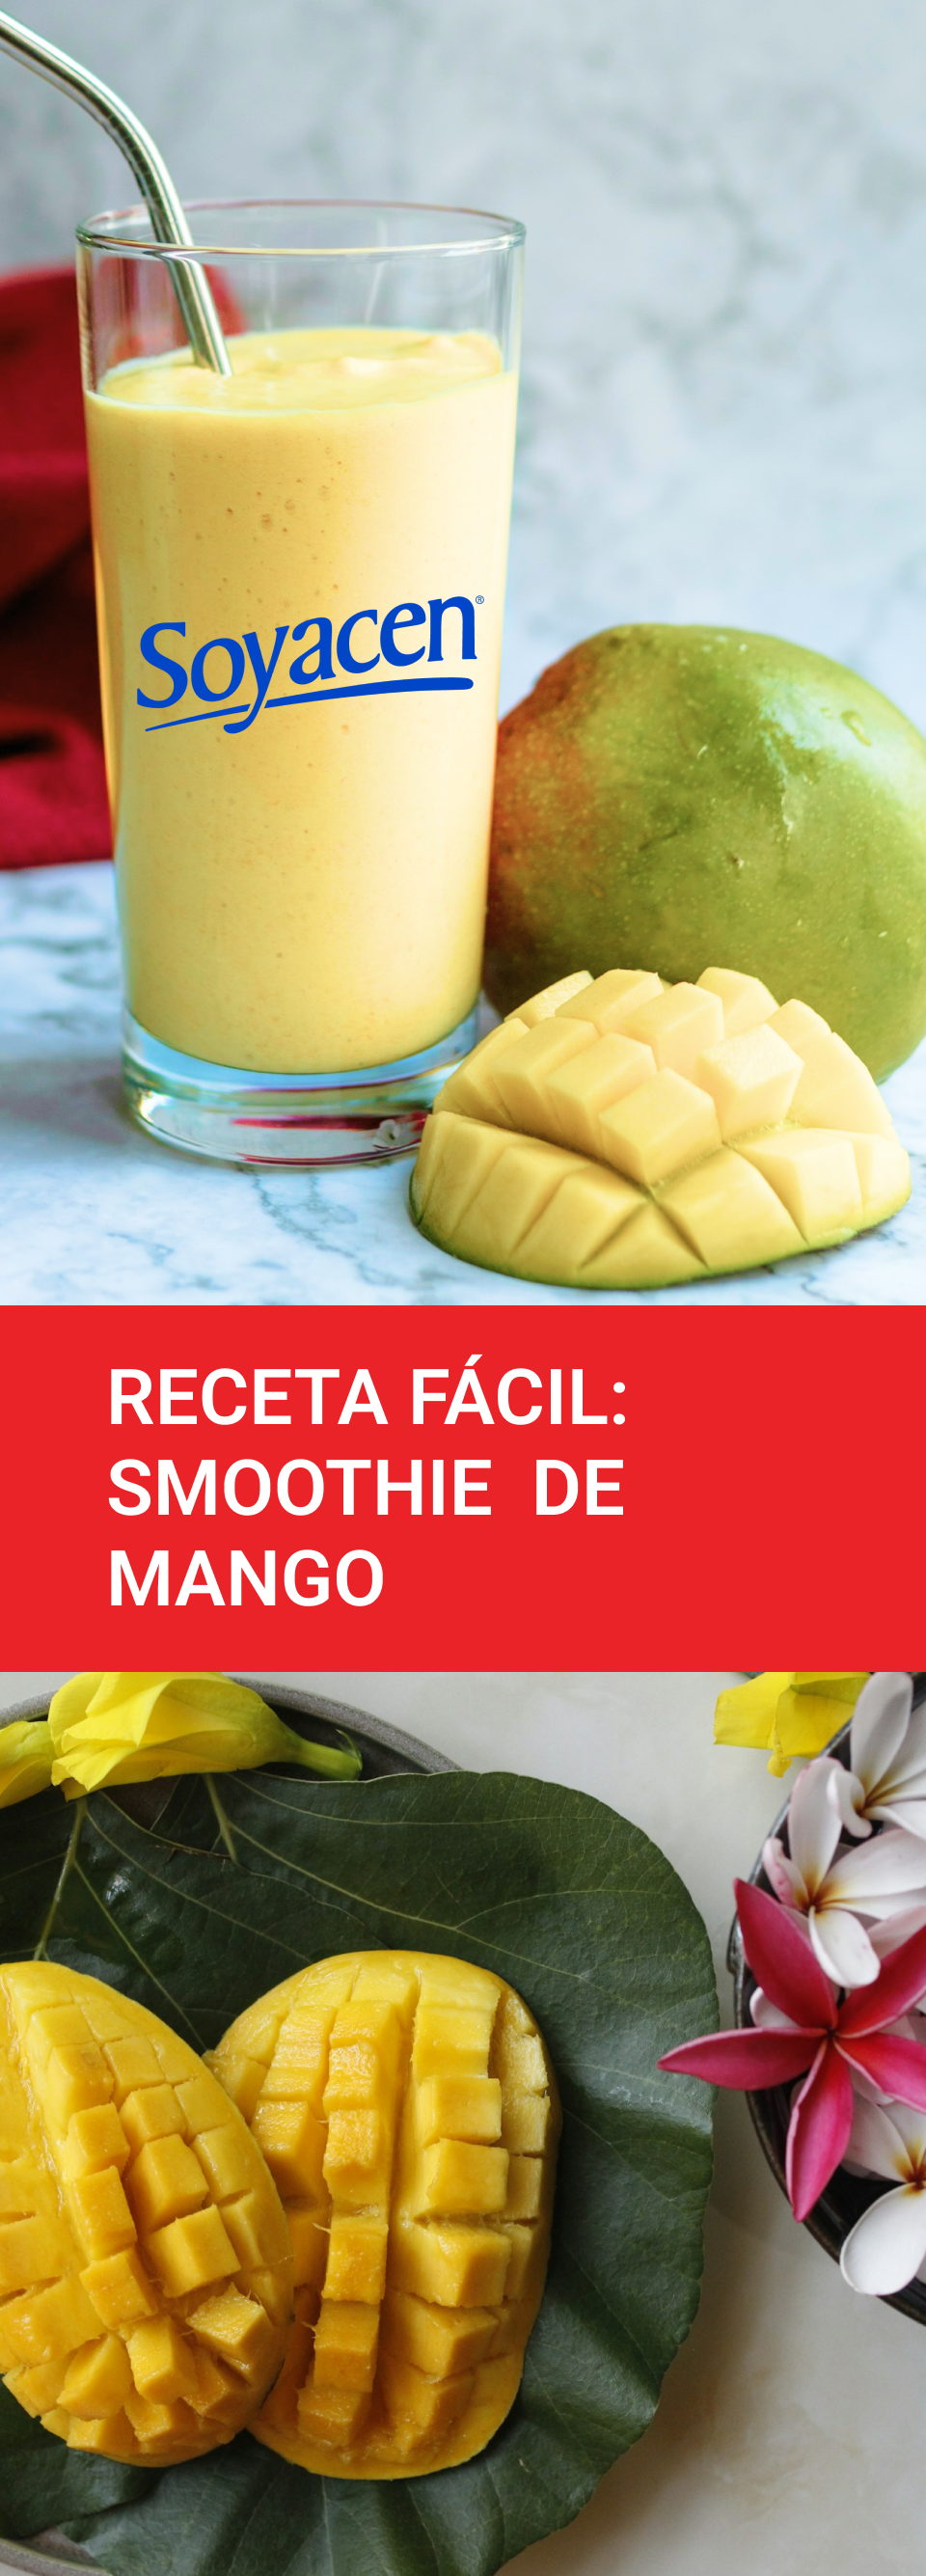 Receta fácil: Smoothie de Mango